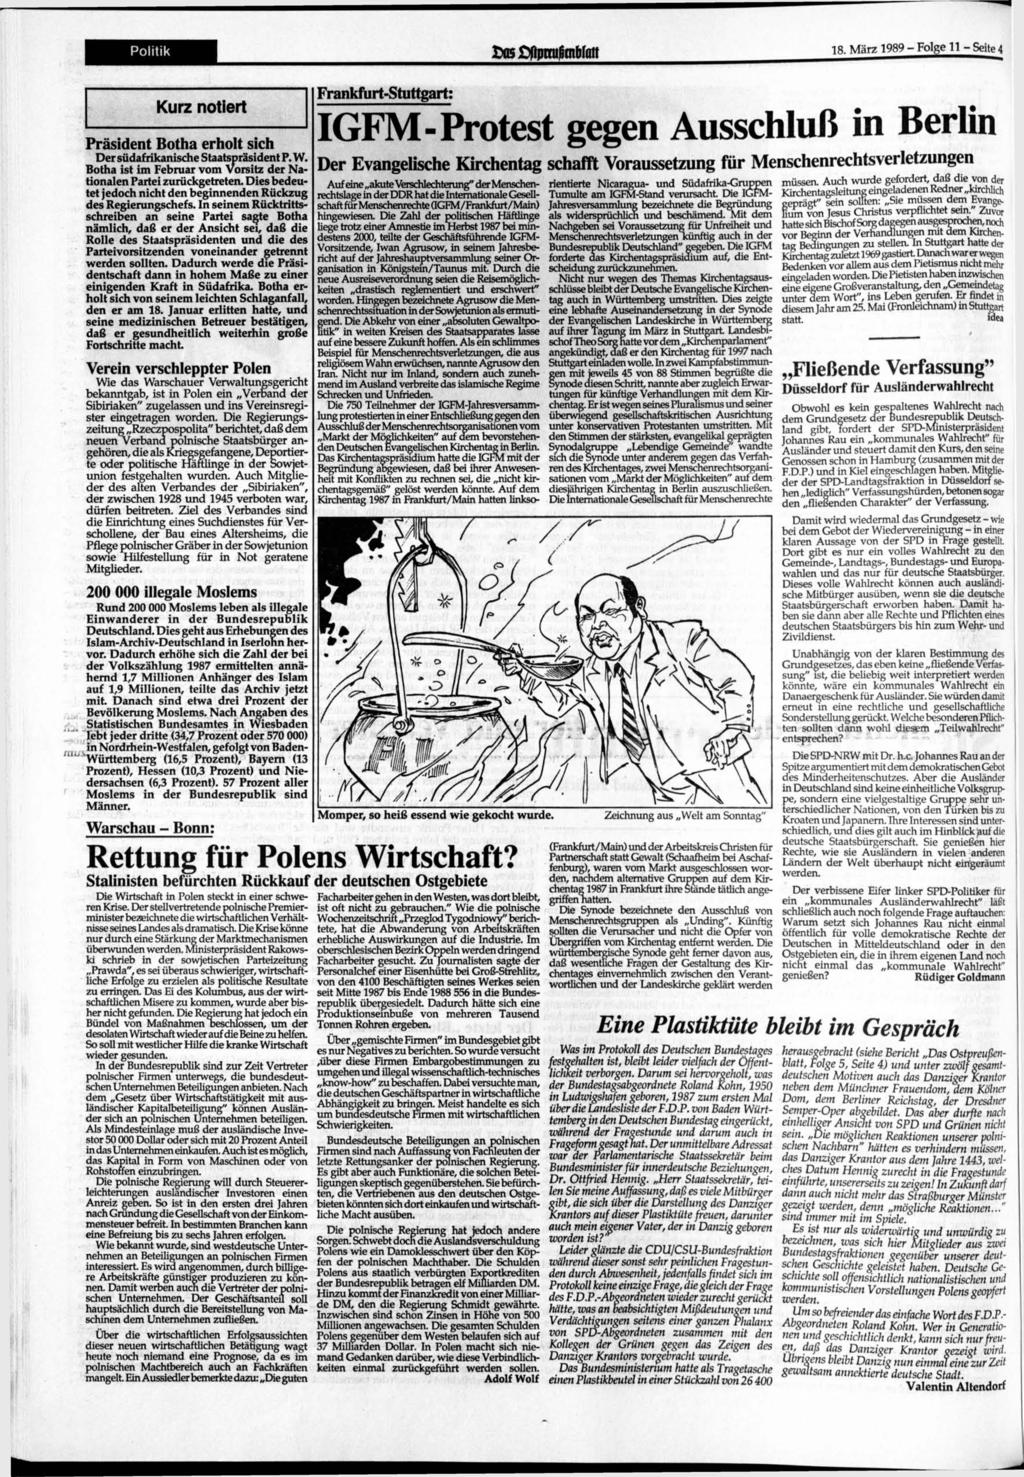 Politik thßßfipmitobfait 18. 1989-Folge 11-Seite4... Kurz notiert Präsident Botha erholt sich Der südafrikanische Staatspräsident P. W.